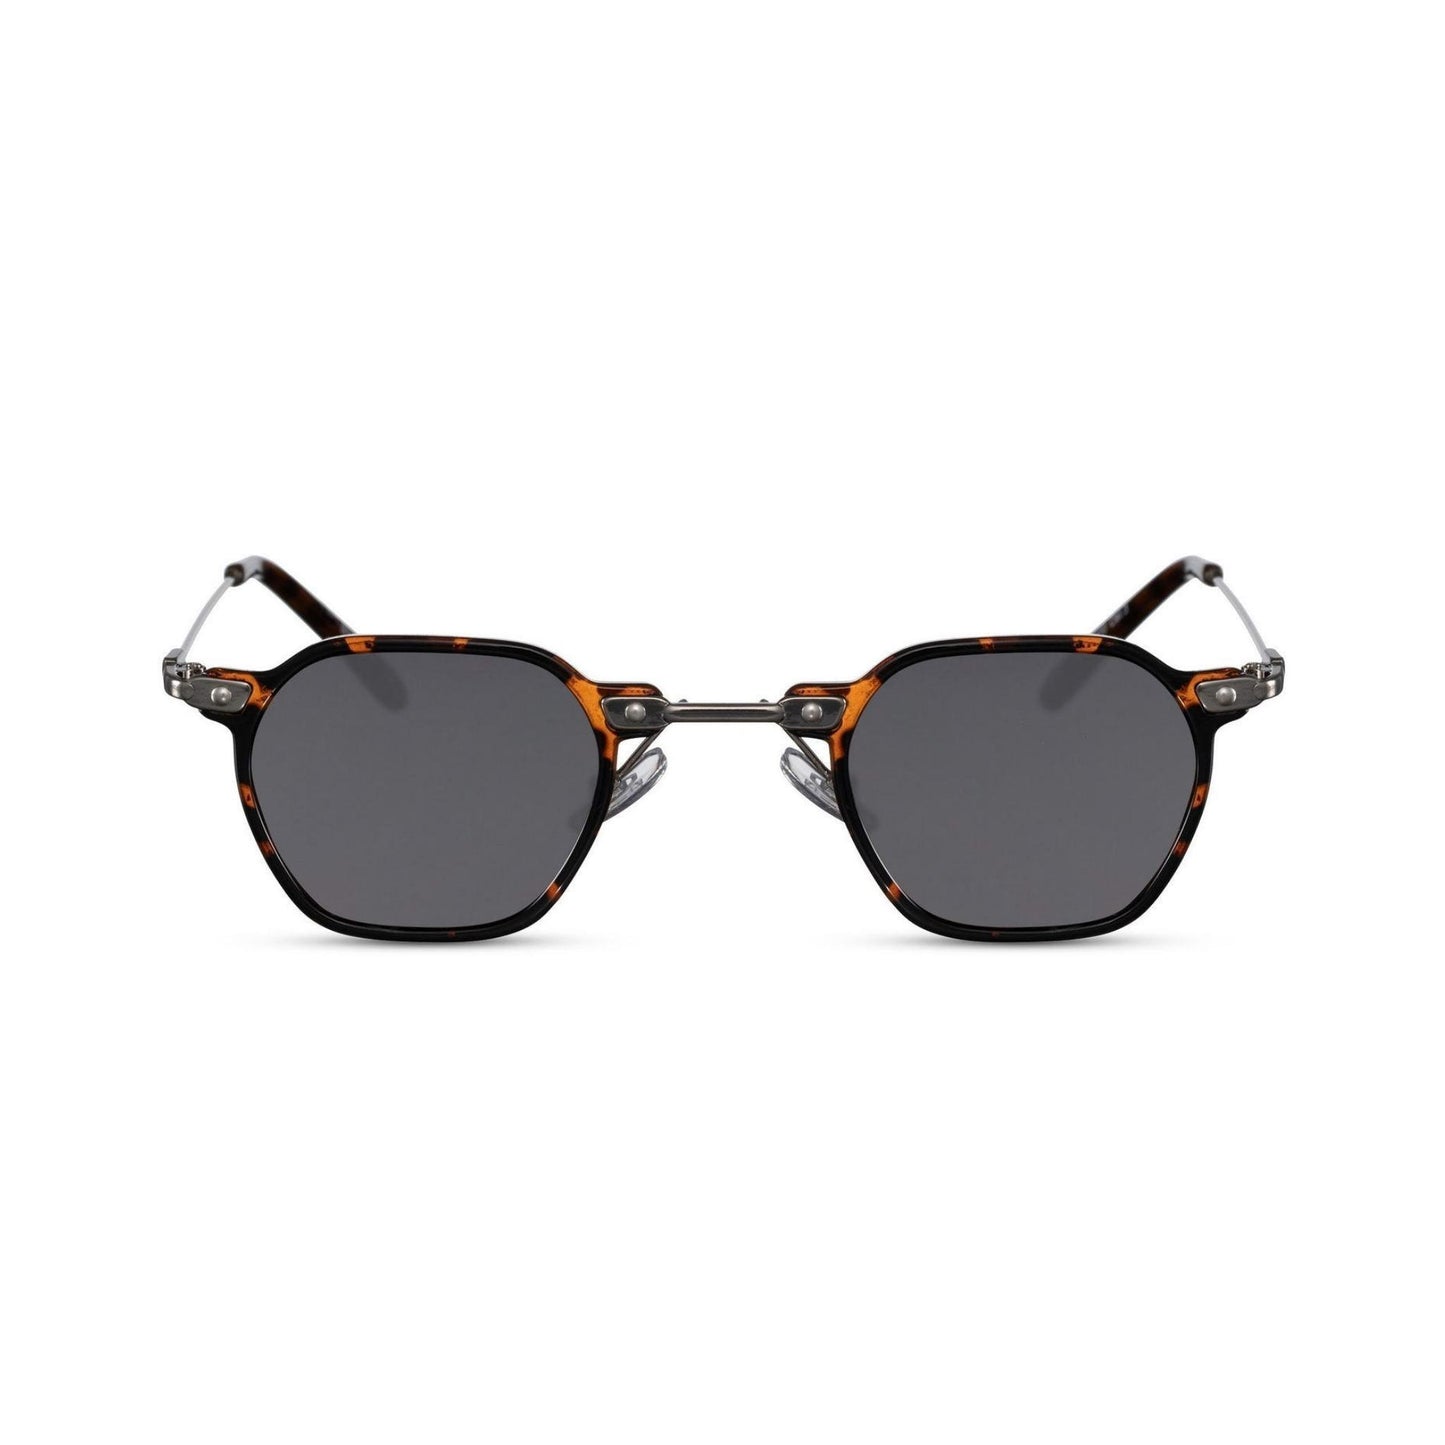 Γυαλιά ηλίου (retro) Mirage της Exposure Sunglasses με προστασία UV400 με καφέ σκελετό και μαύρο φακό.